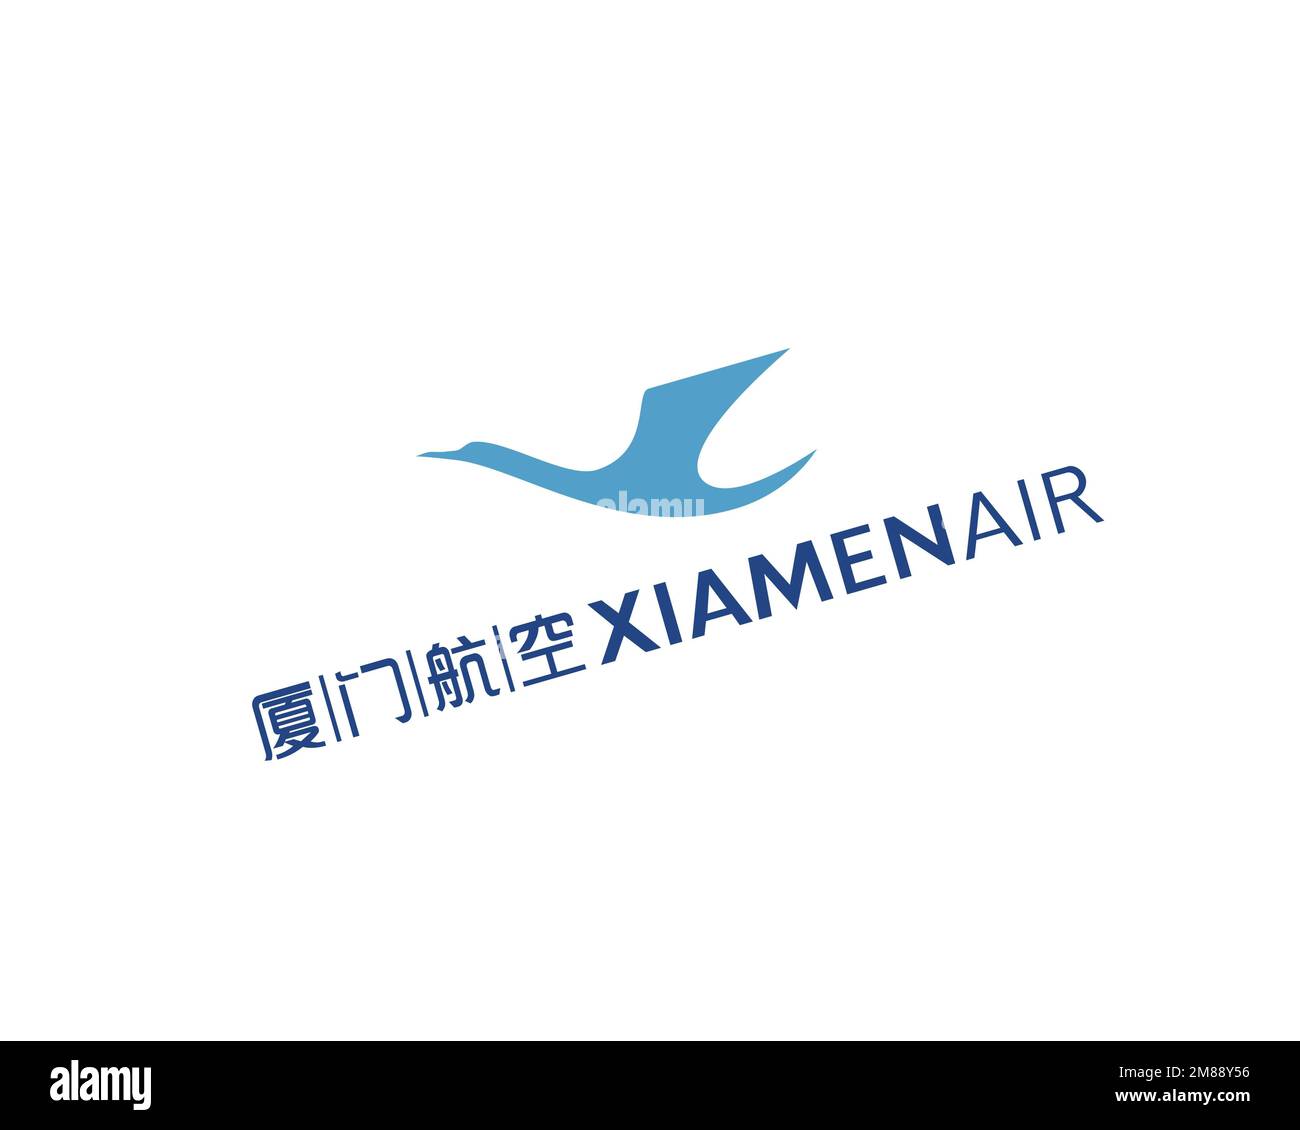 XiamenAir, rotated logo, white background Stock Photo